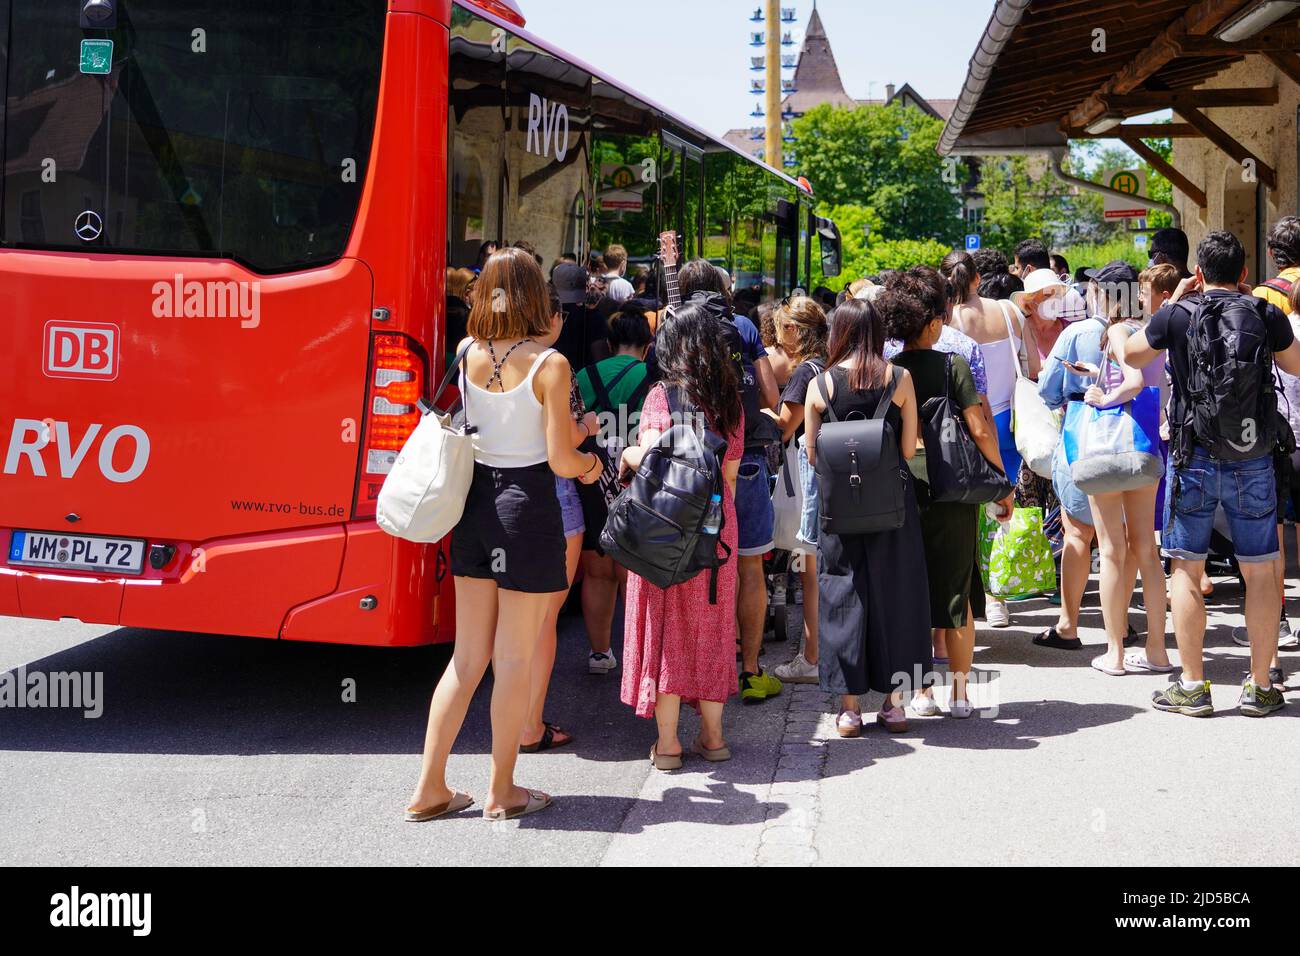 De nombreux voyageurs d'une journée se rendent sur un bus de la ligne 9608 à la gare de Kochel en Bavière pour aller à Walchensee, Kochel, Allemagne, 18.6.22 Banque D'Images